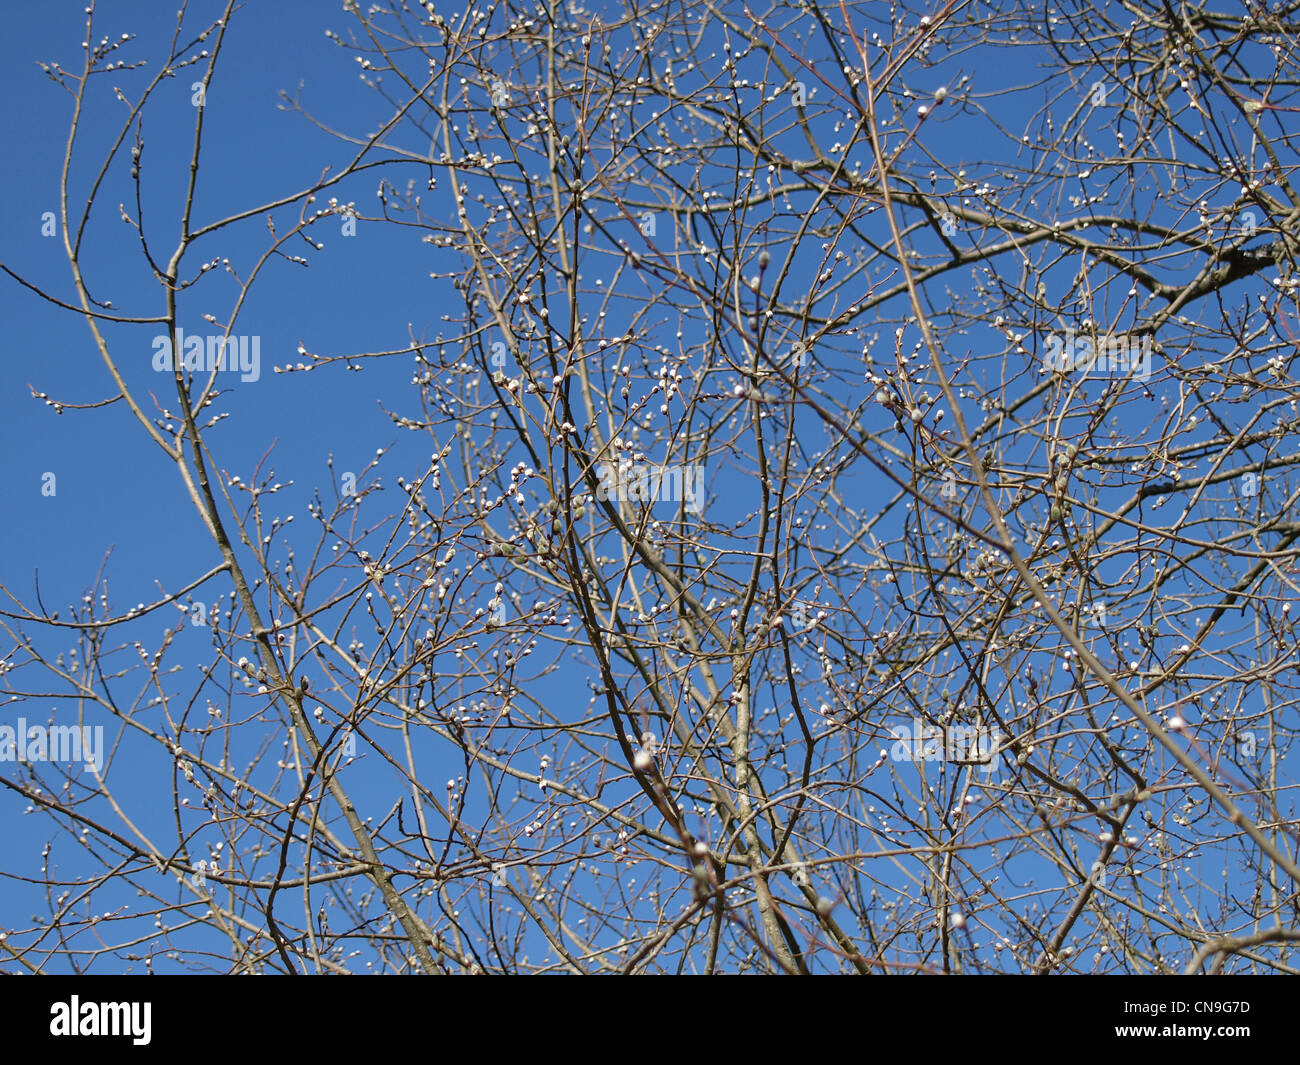 willow  catkins in spring / Salix / Weiden Kätzchen im Frühling Stock Photo